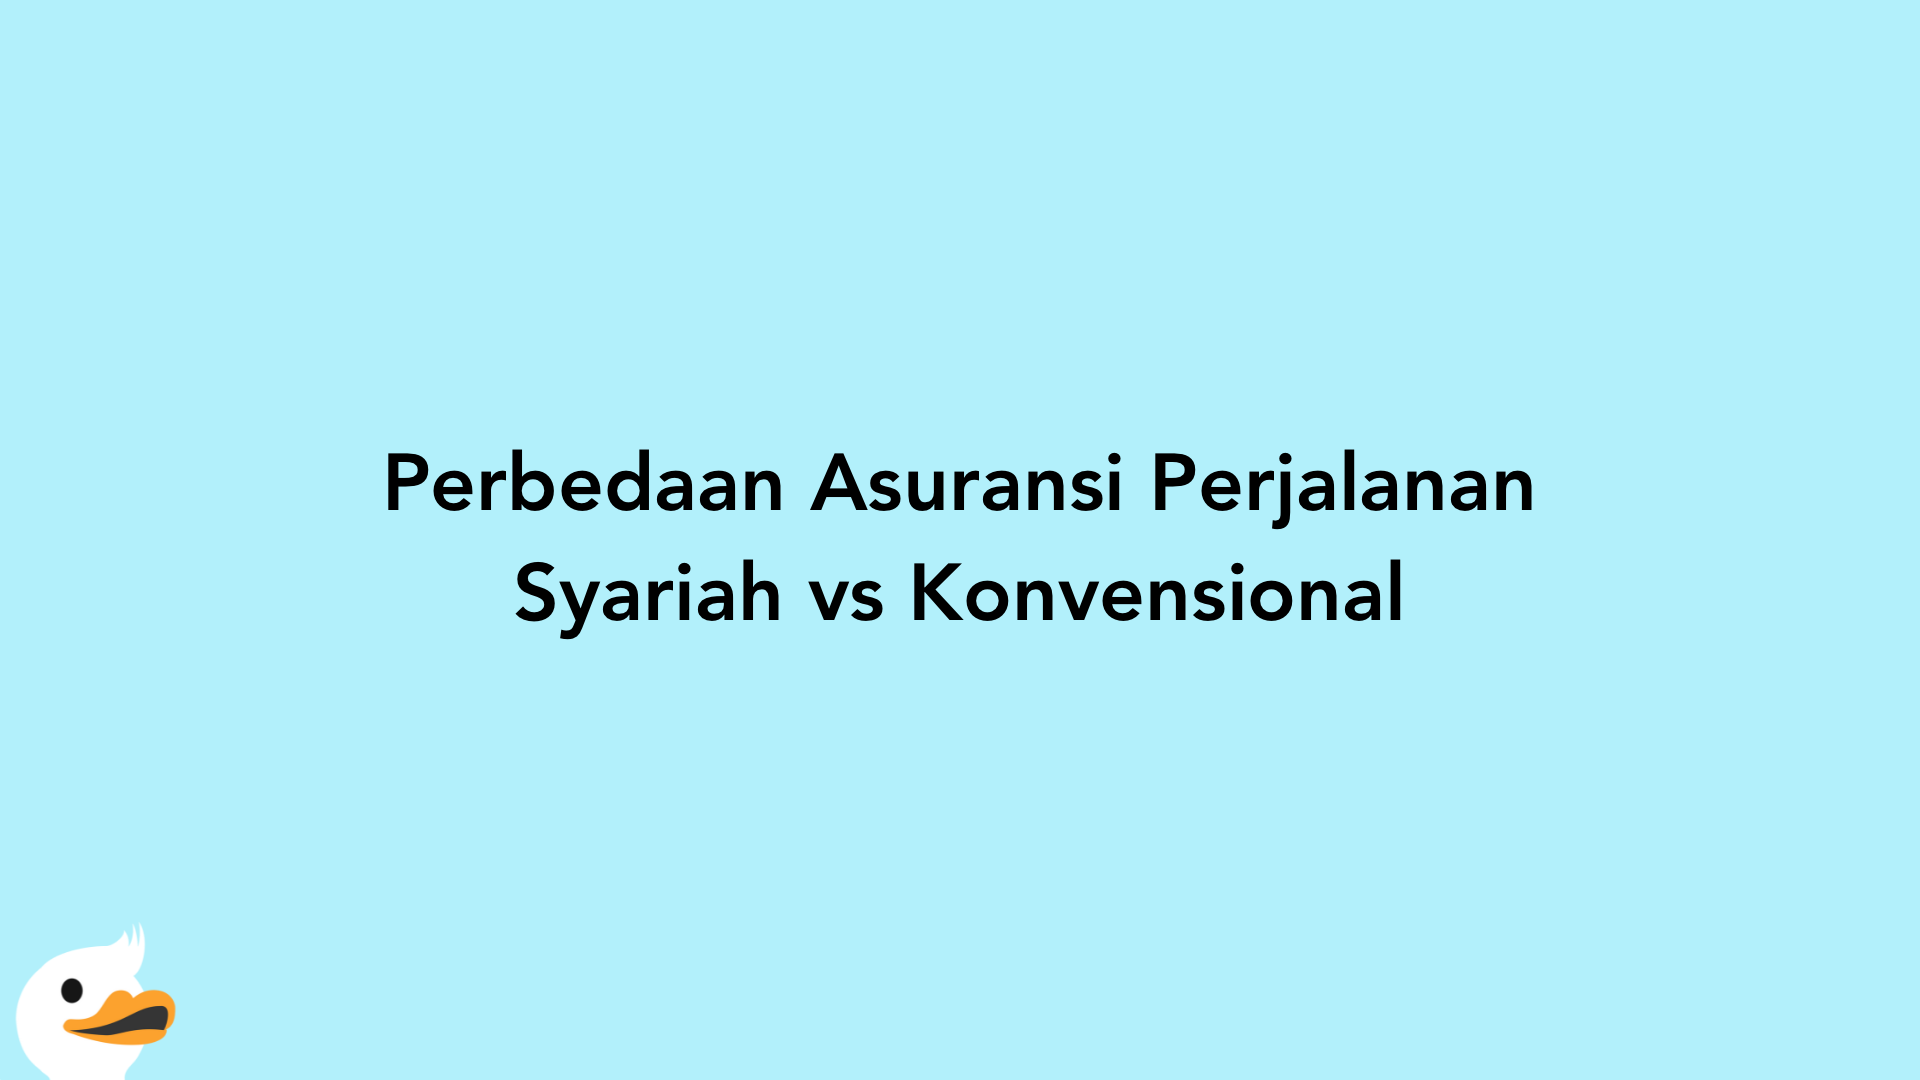 Perbedaan Asuransi Perjalanan Syariah vs Konvensional